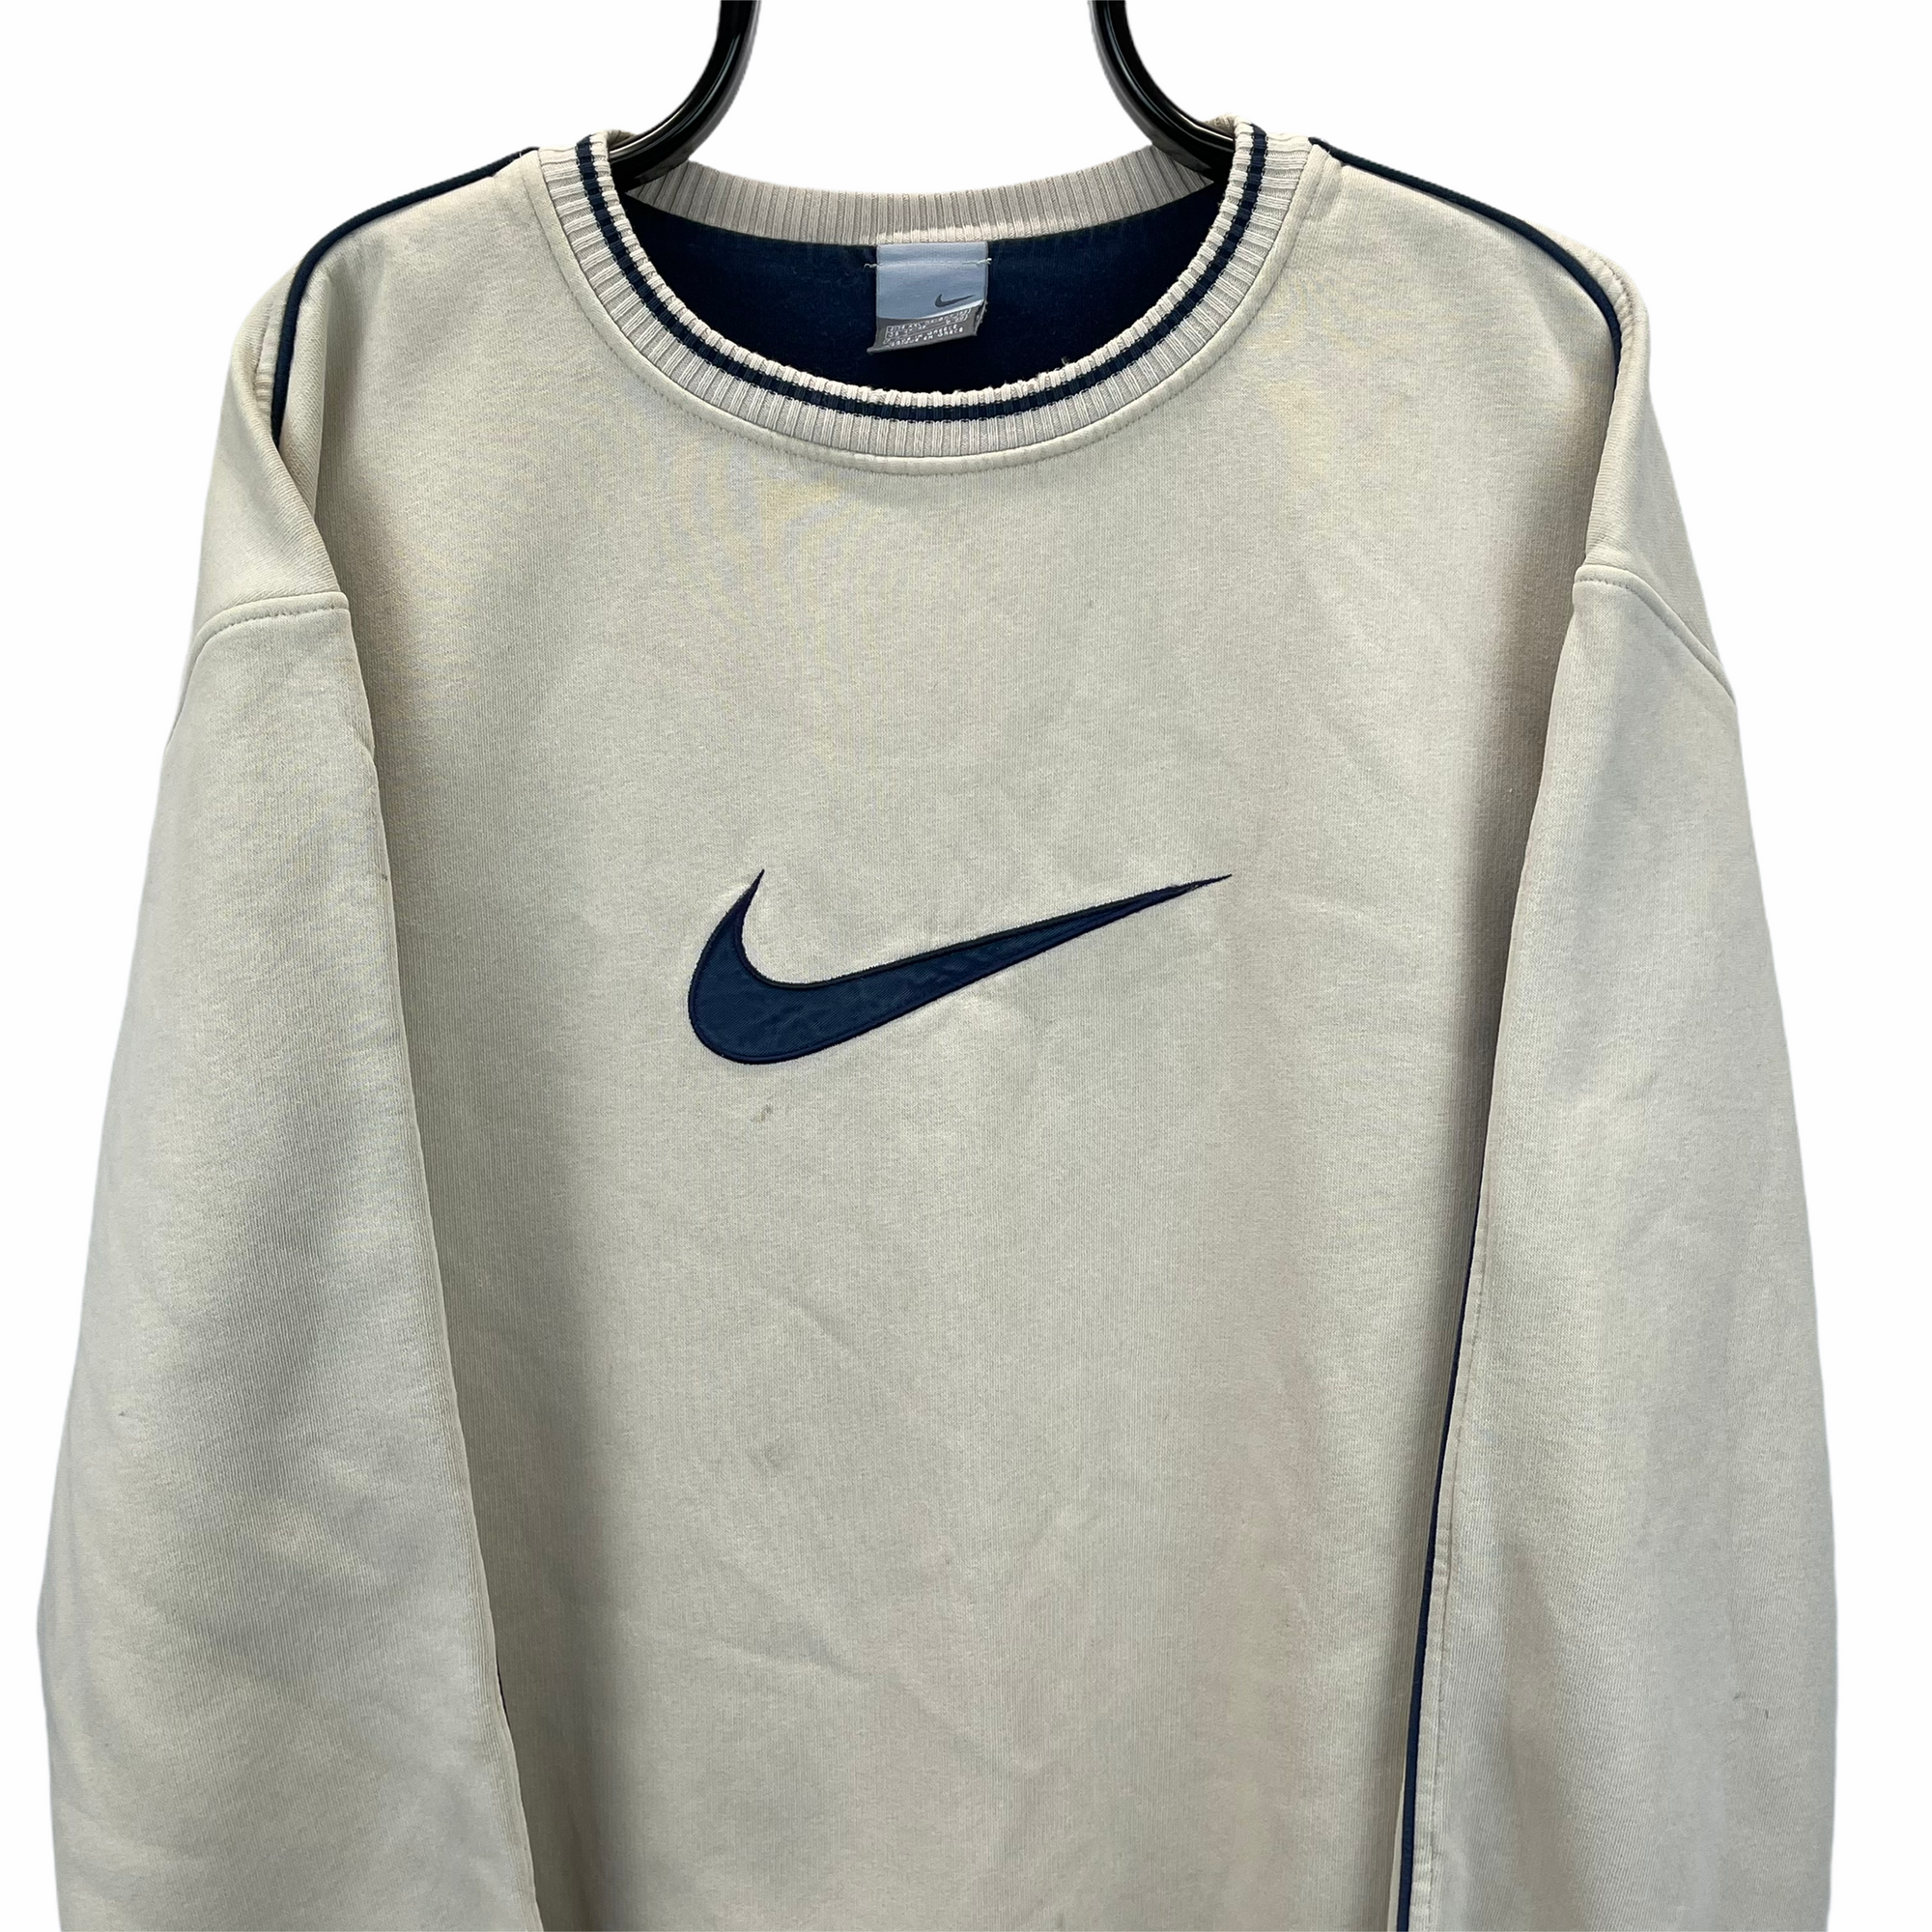 Vintage Nike Big Swoosh Sweatshirt in Beige & Navy - Men's XL/Women's XXL